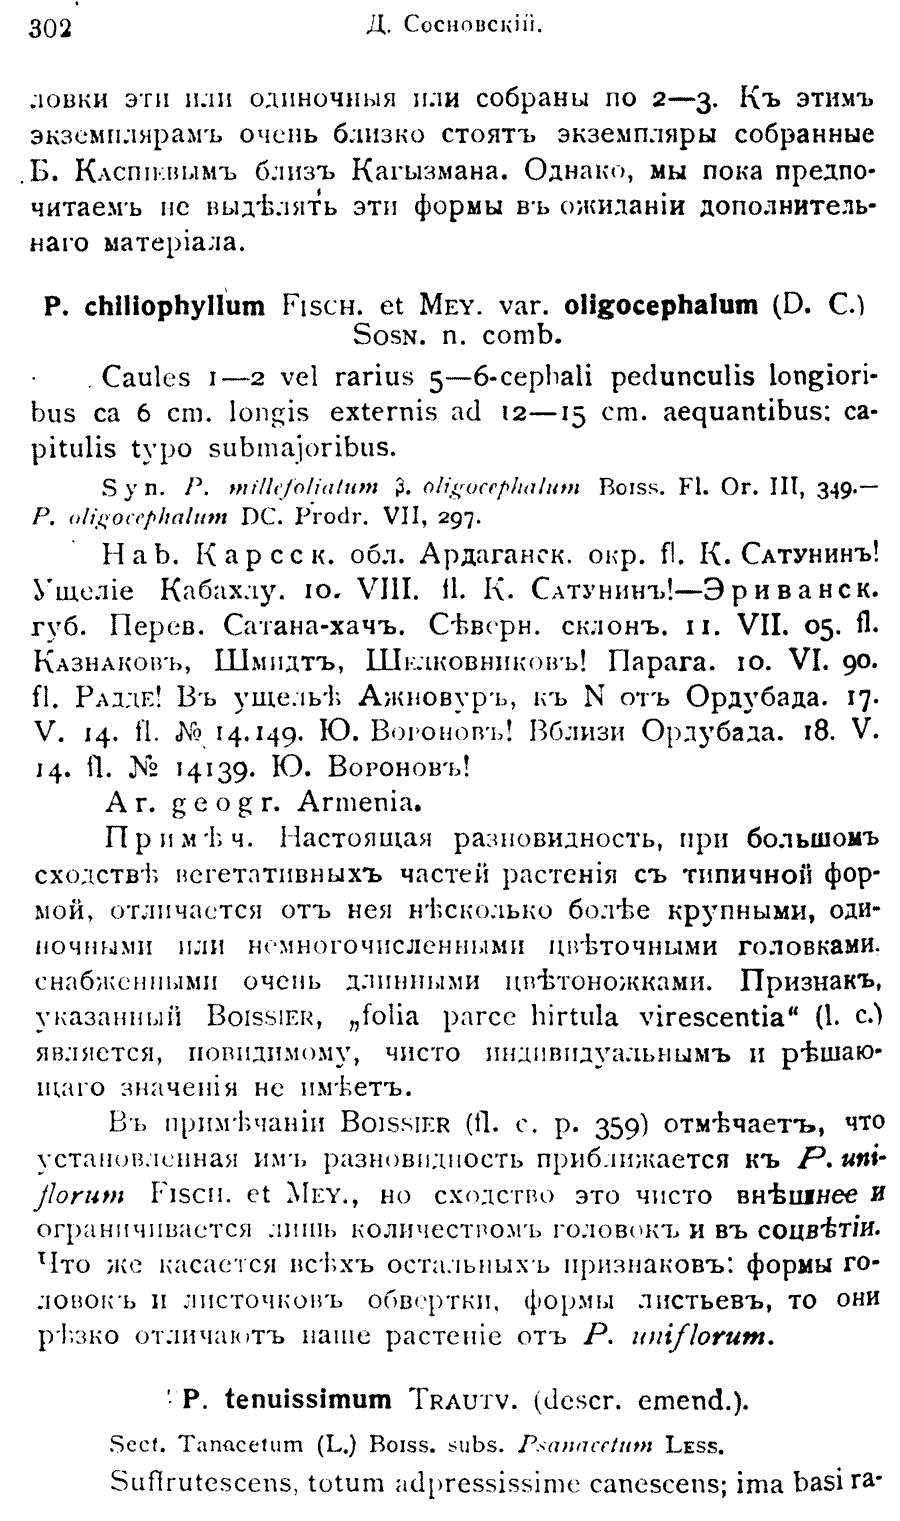 https://forum.plantarium.ru/misc.php?action=pun_attachment&amp;item=31425